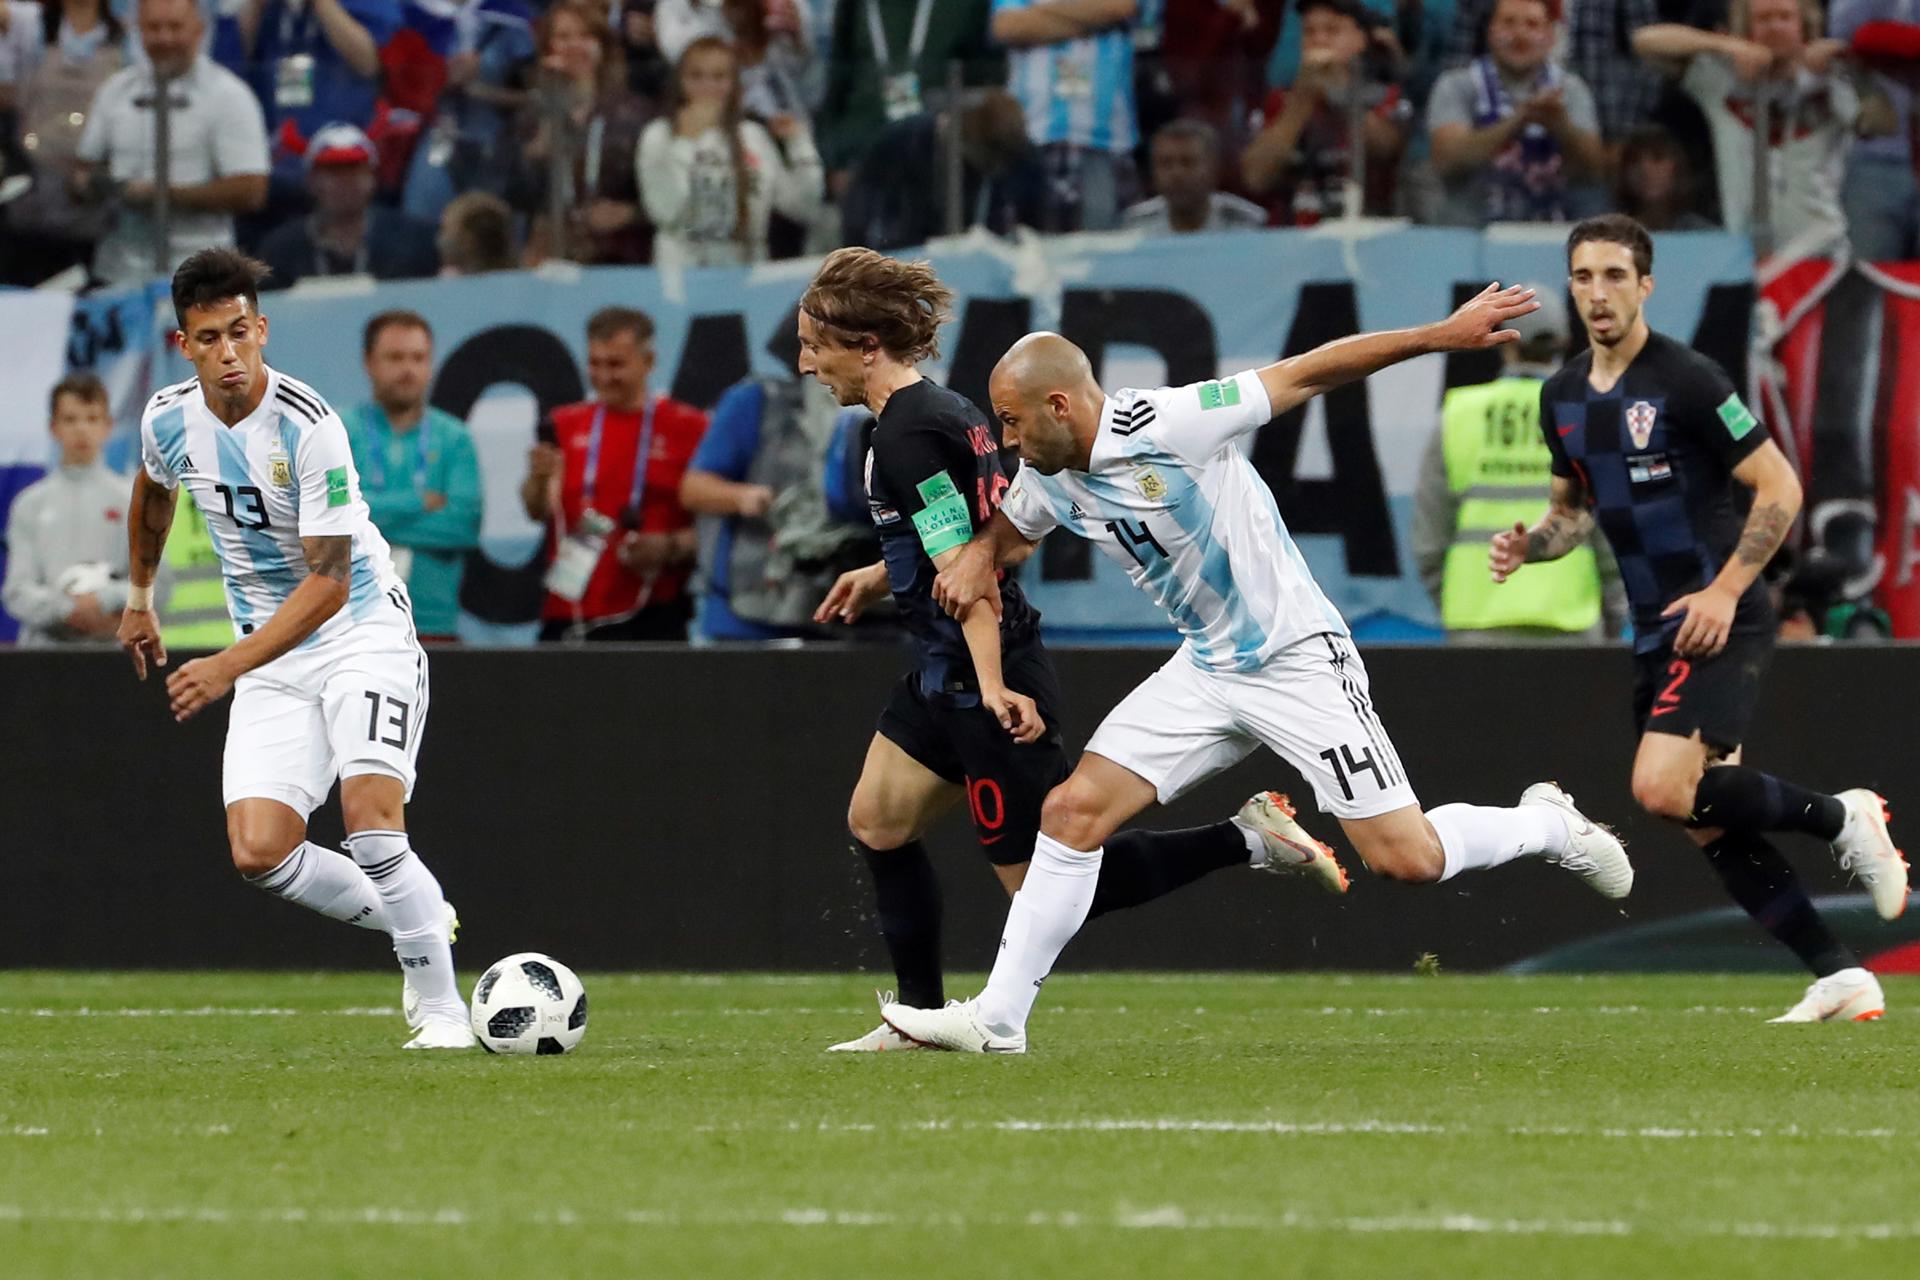 El centrocampista croata Luka Modric y el defensa argentino Javier Mascherano durante el partido Argentina-Croacia, del Grupo D del Mundial de Fútbol de Rusia 2018. Foto: EFE.